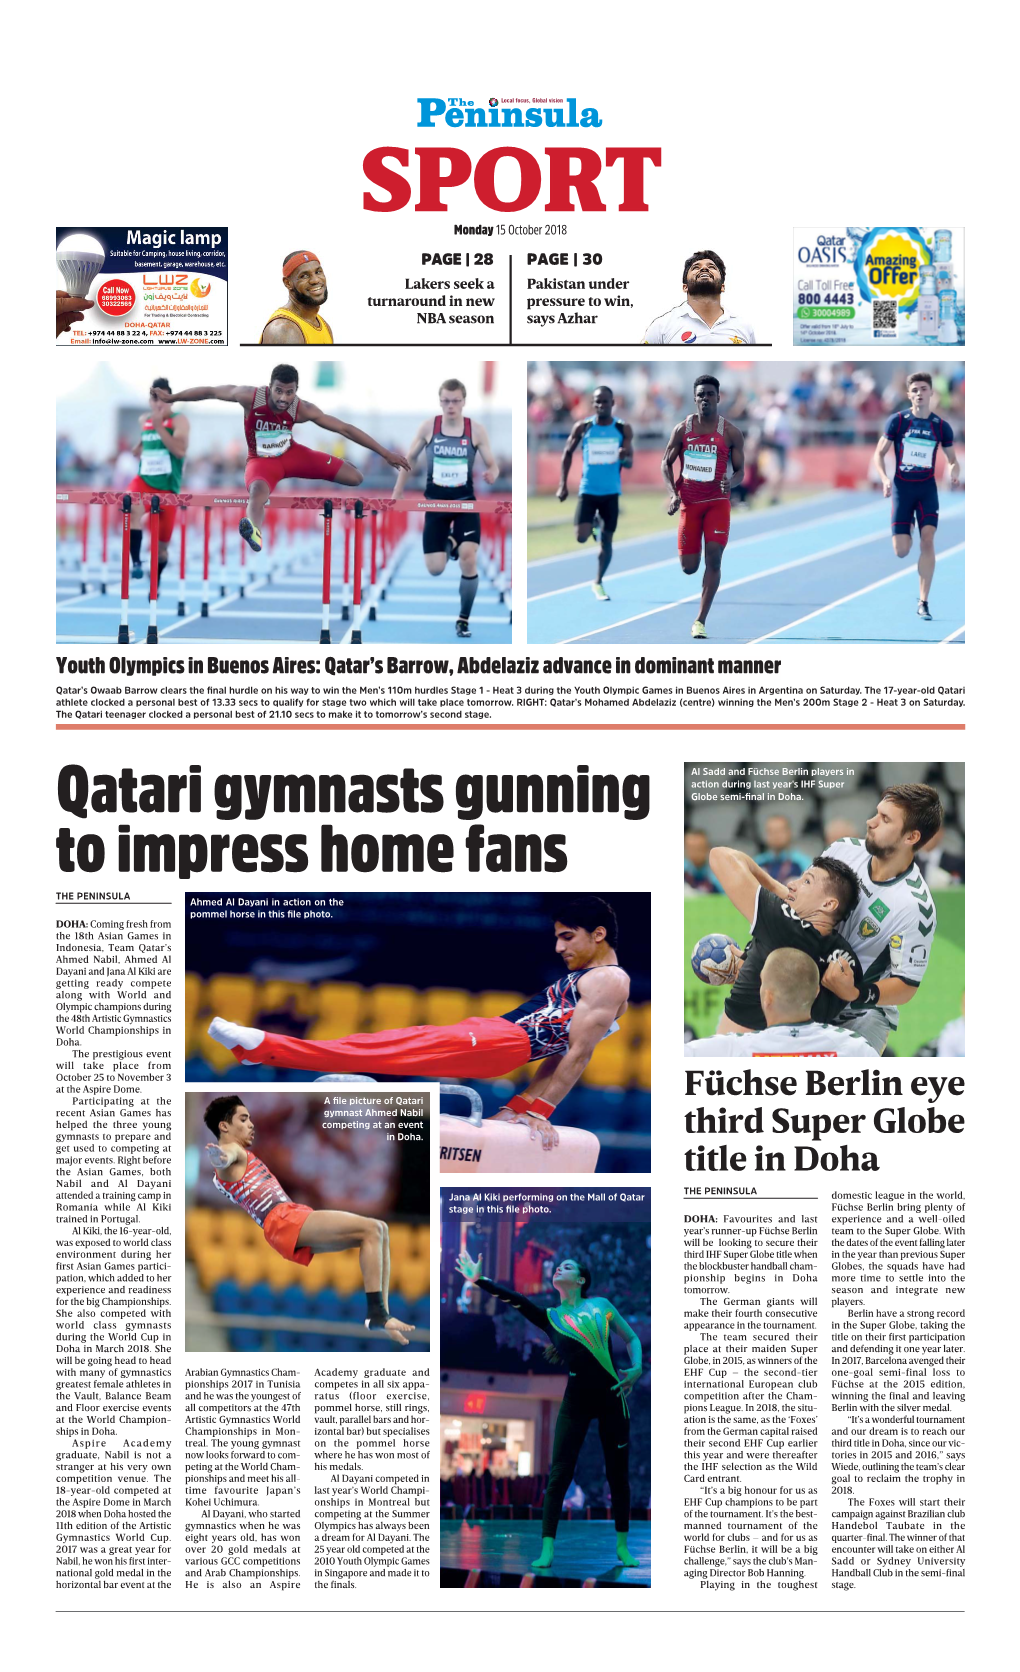 Qatari Gymnasts Gunning to Impress Home Fans